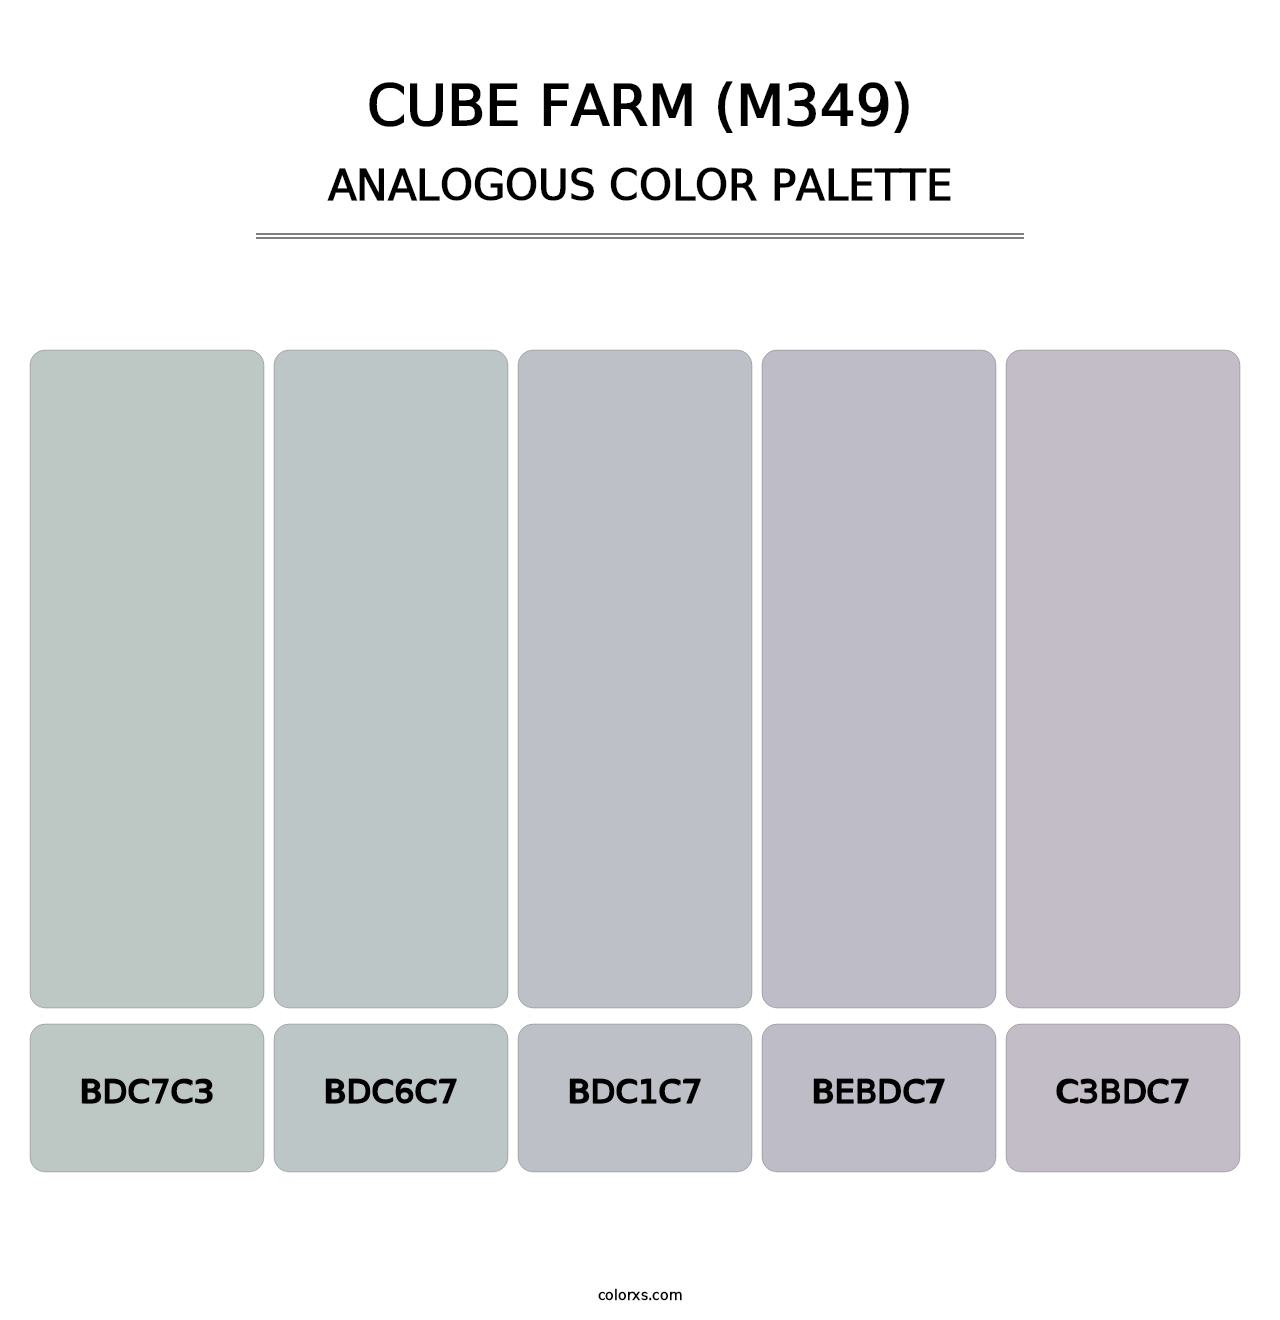 Cube Farm (M349) - Analogous Color Palette